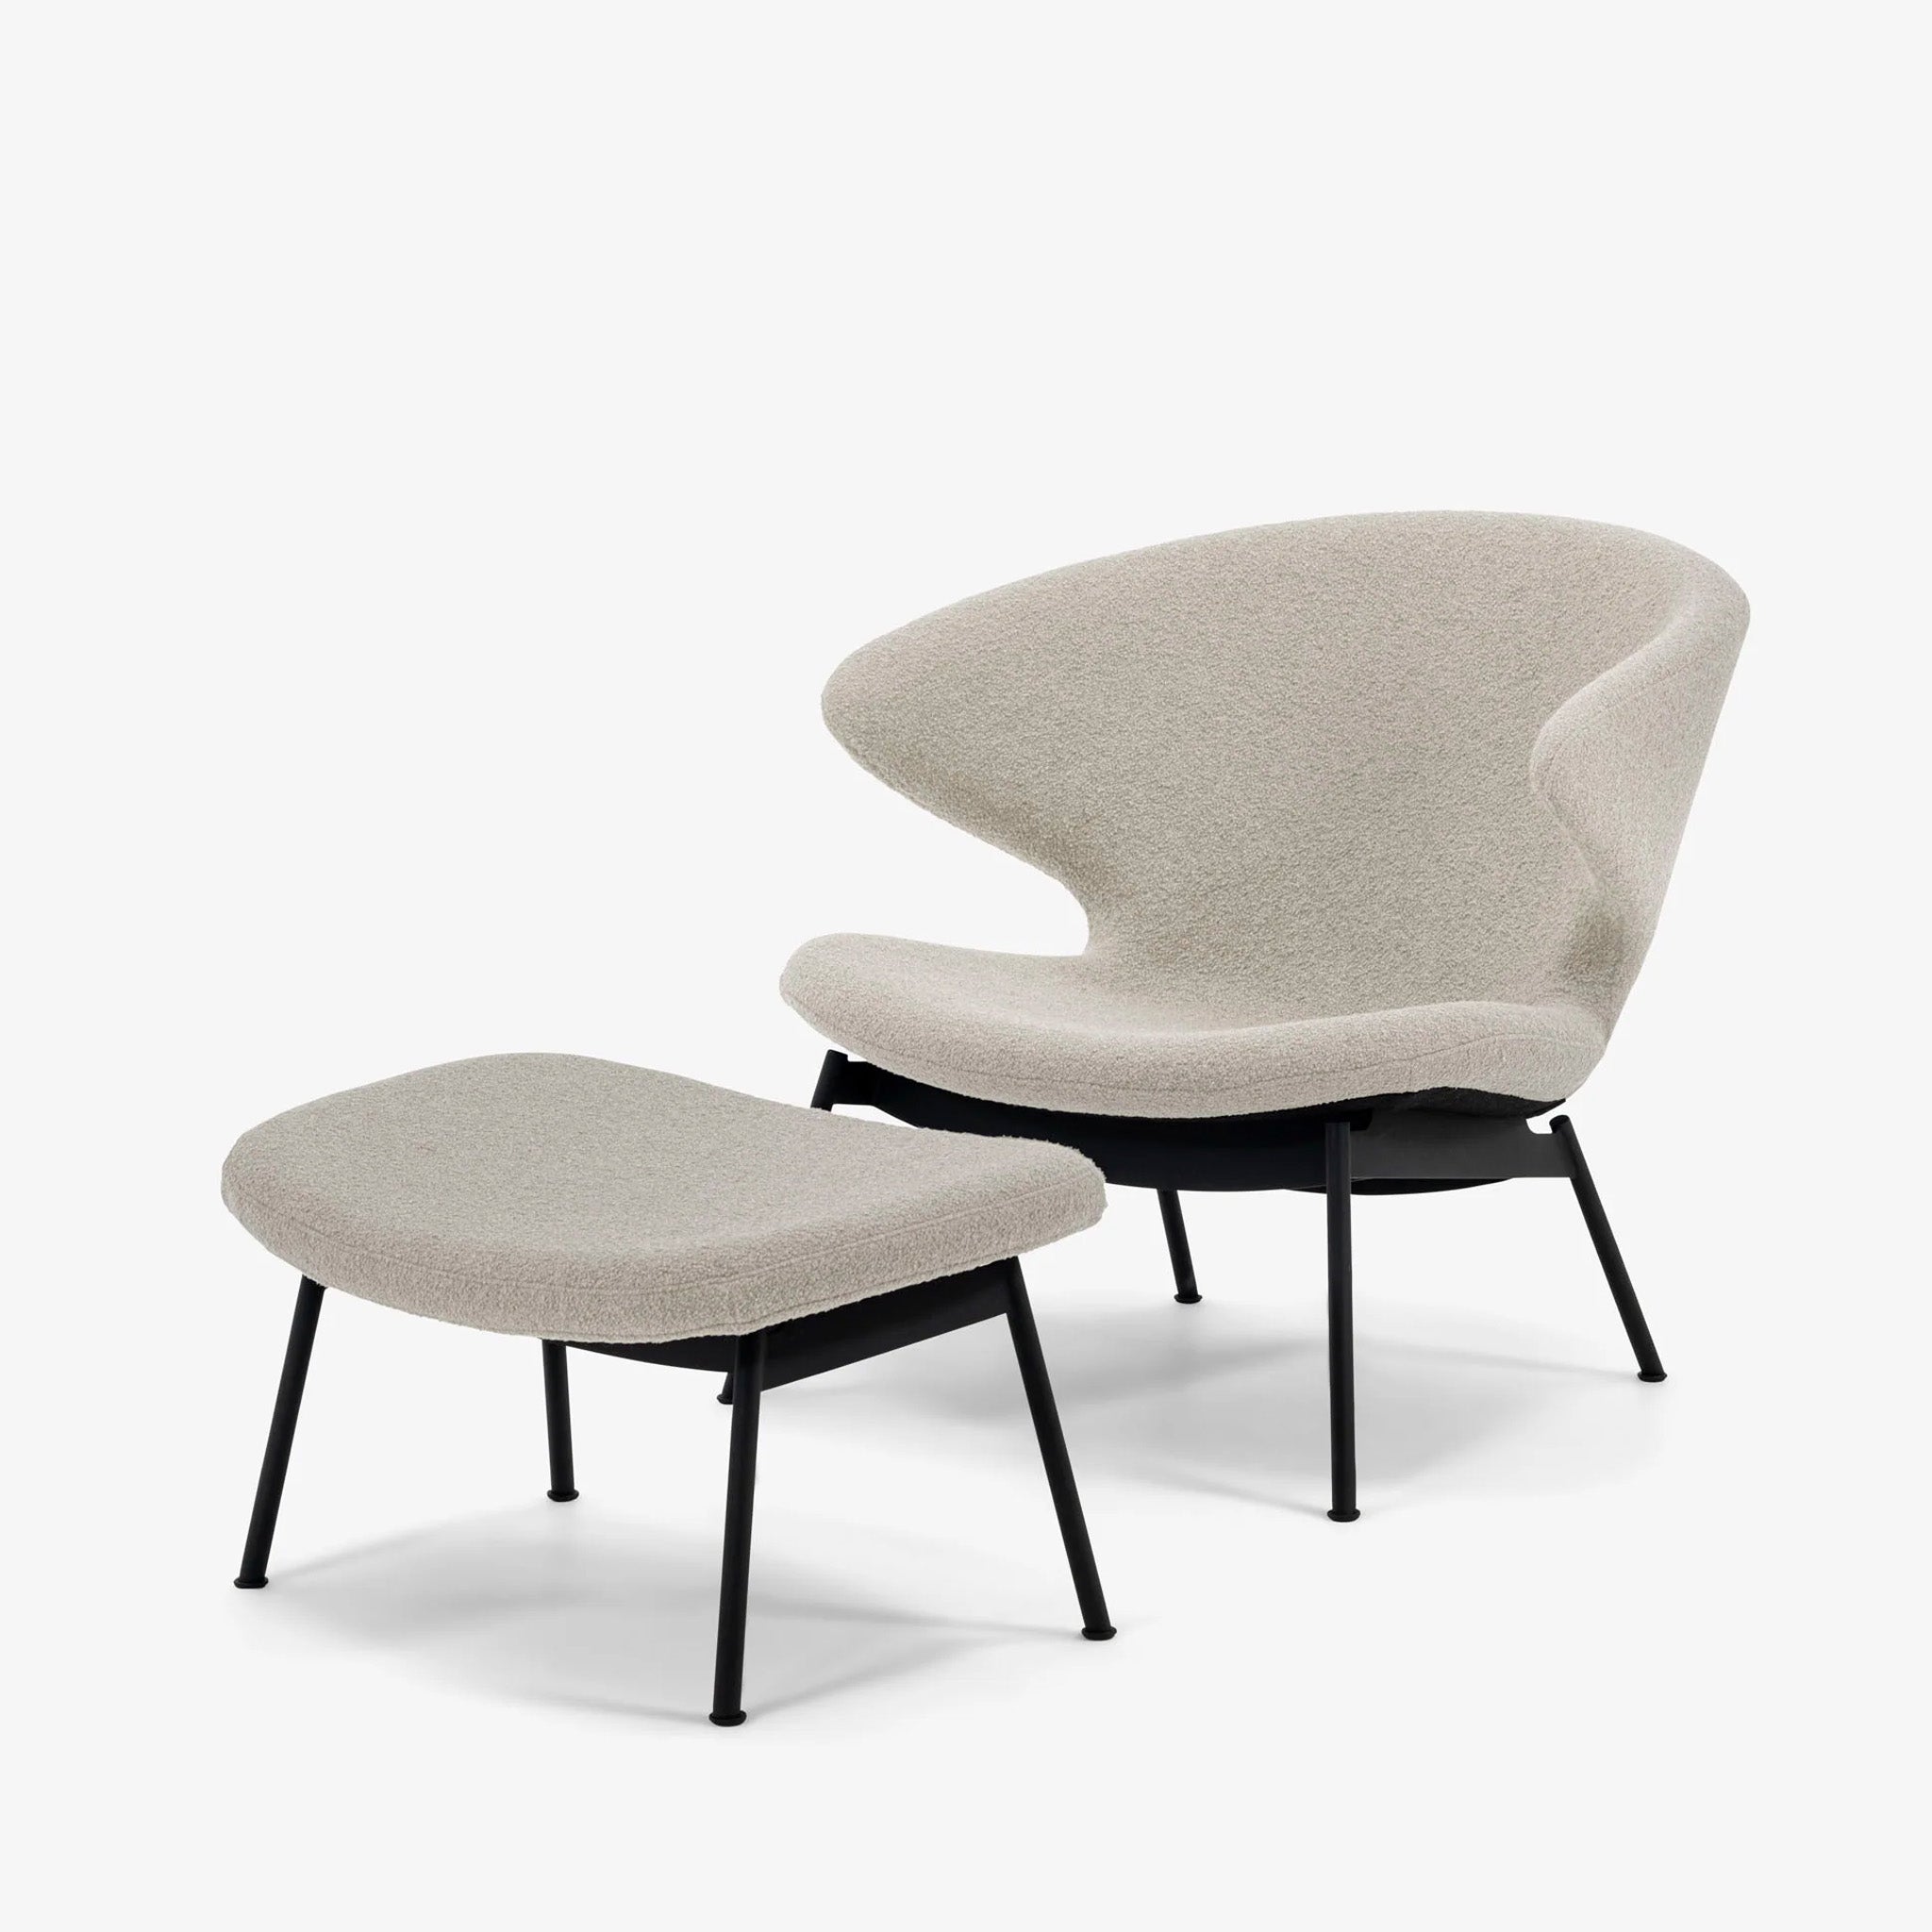 Ella Lounge Chair by Matthew Hilton for Case